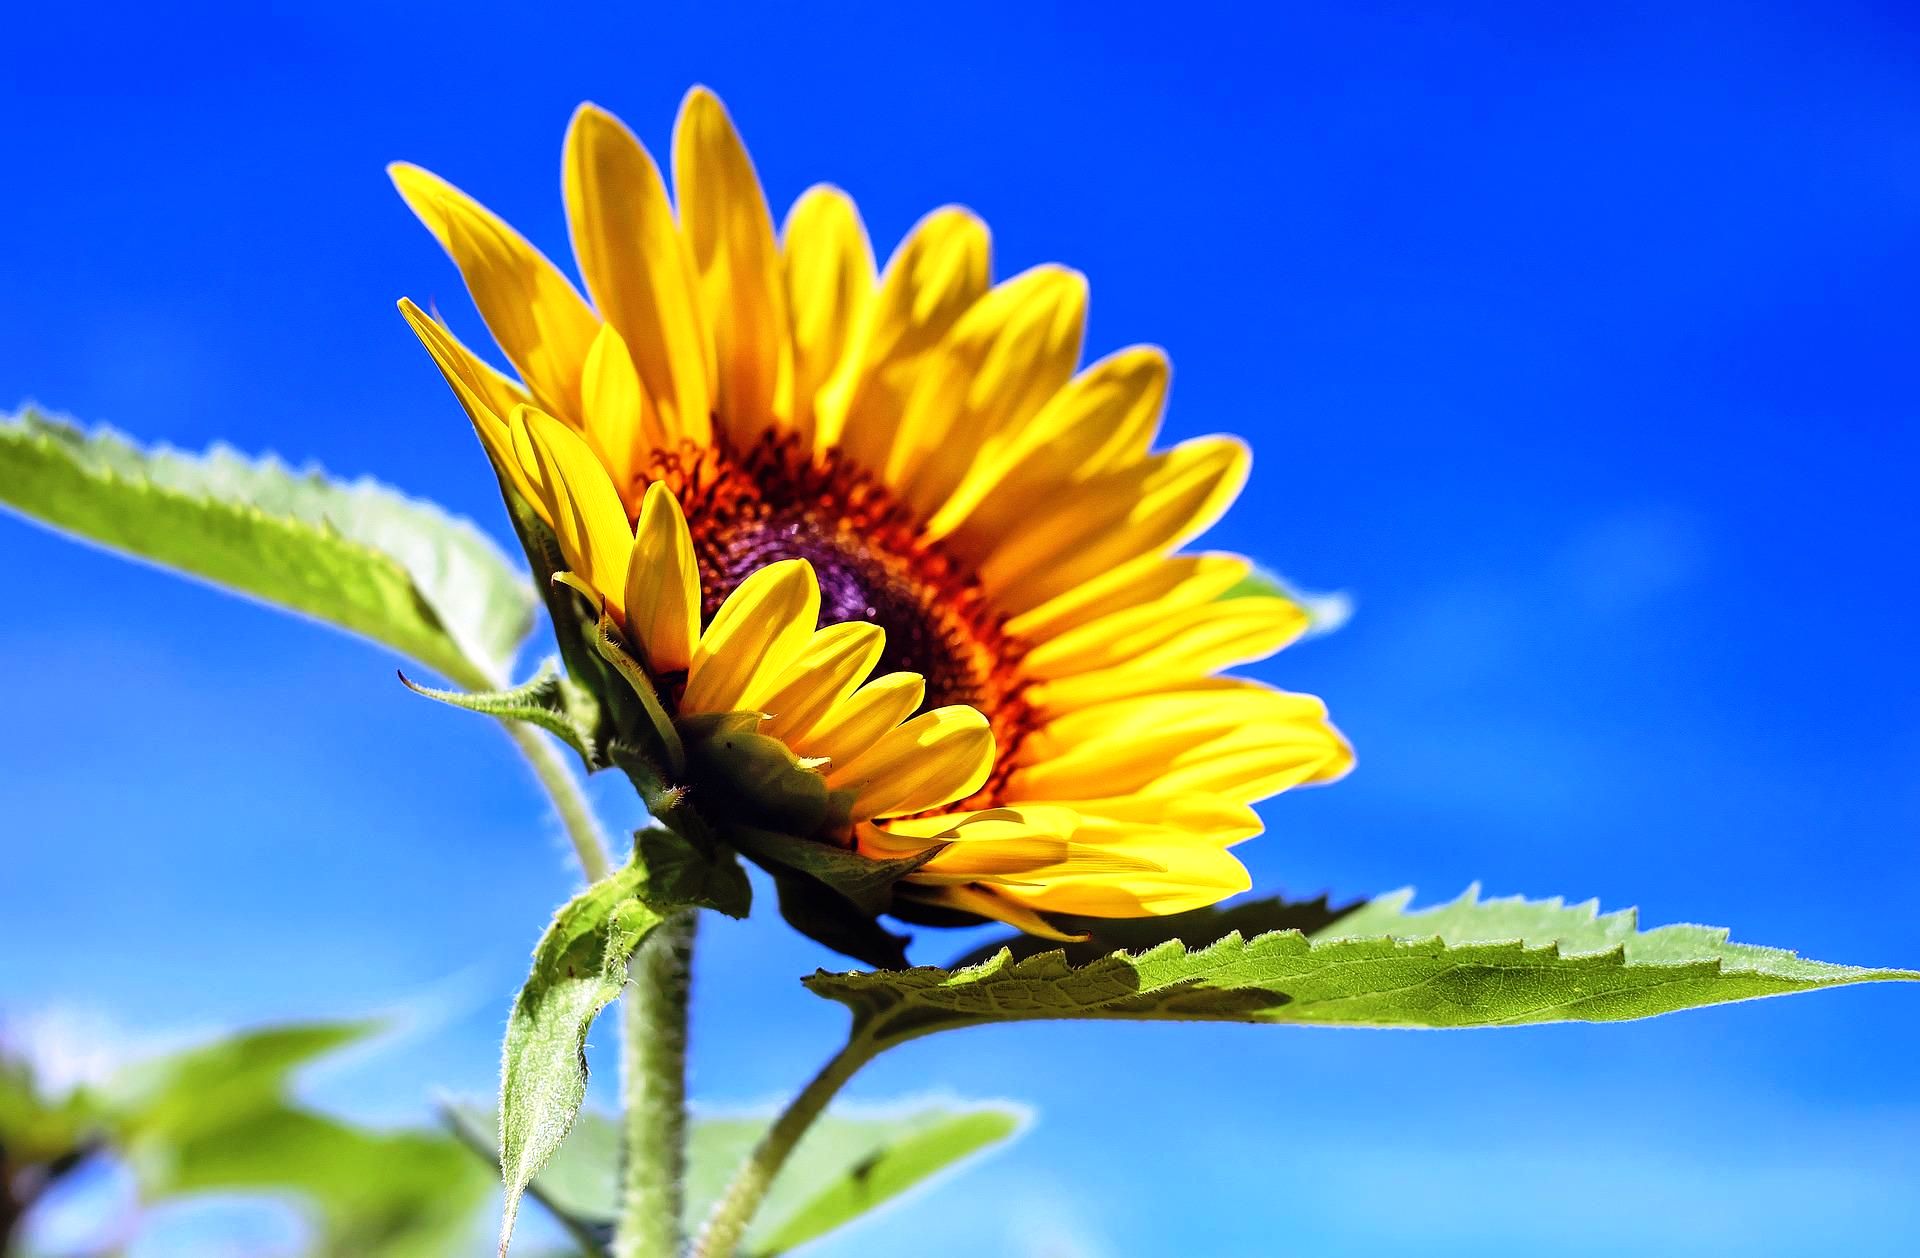 Sonnenbluemen, couleur pixabay (c) couleur, pixabay